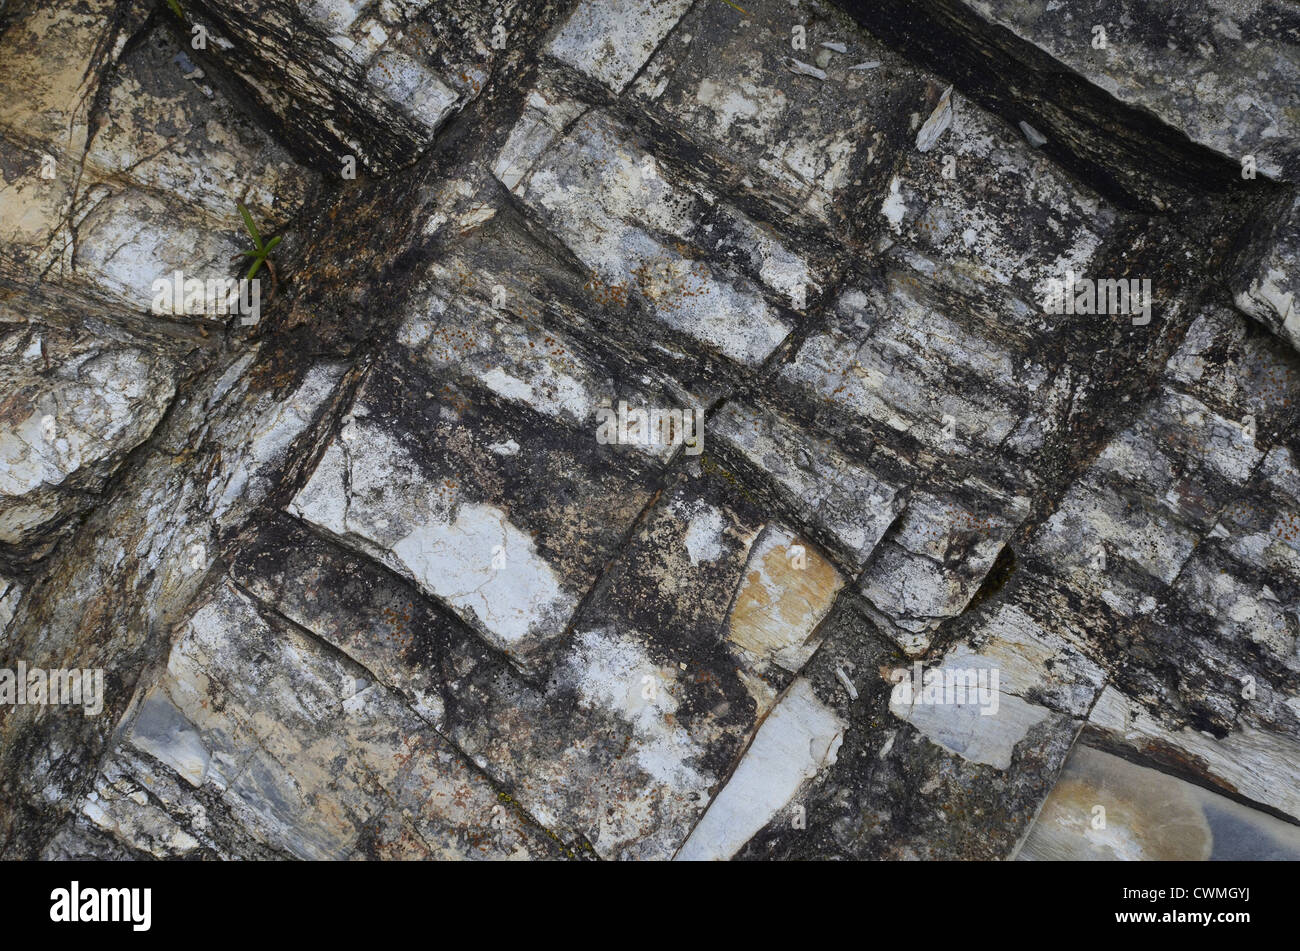 Cornwall - Costa la textura de la roca de fondo de papel tapiz en la región entre el par y Polkerris Sands. Concepto de "caer sobre suelo pedregoso', advertencias o consejos. Foto de stock